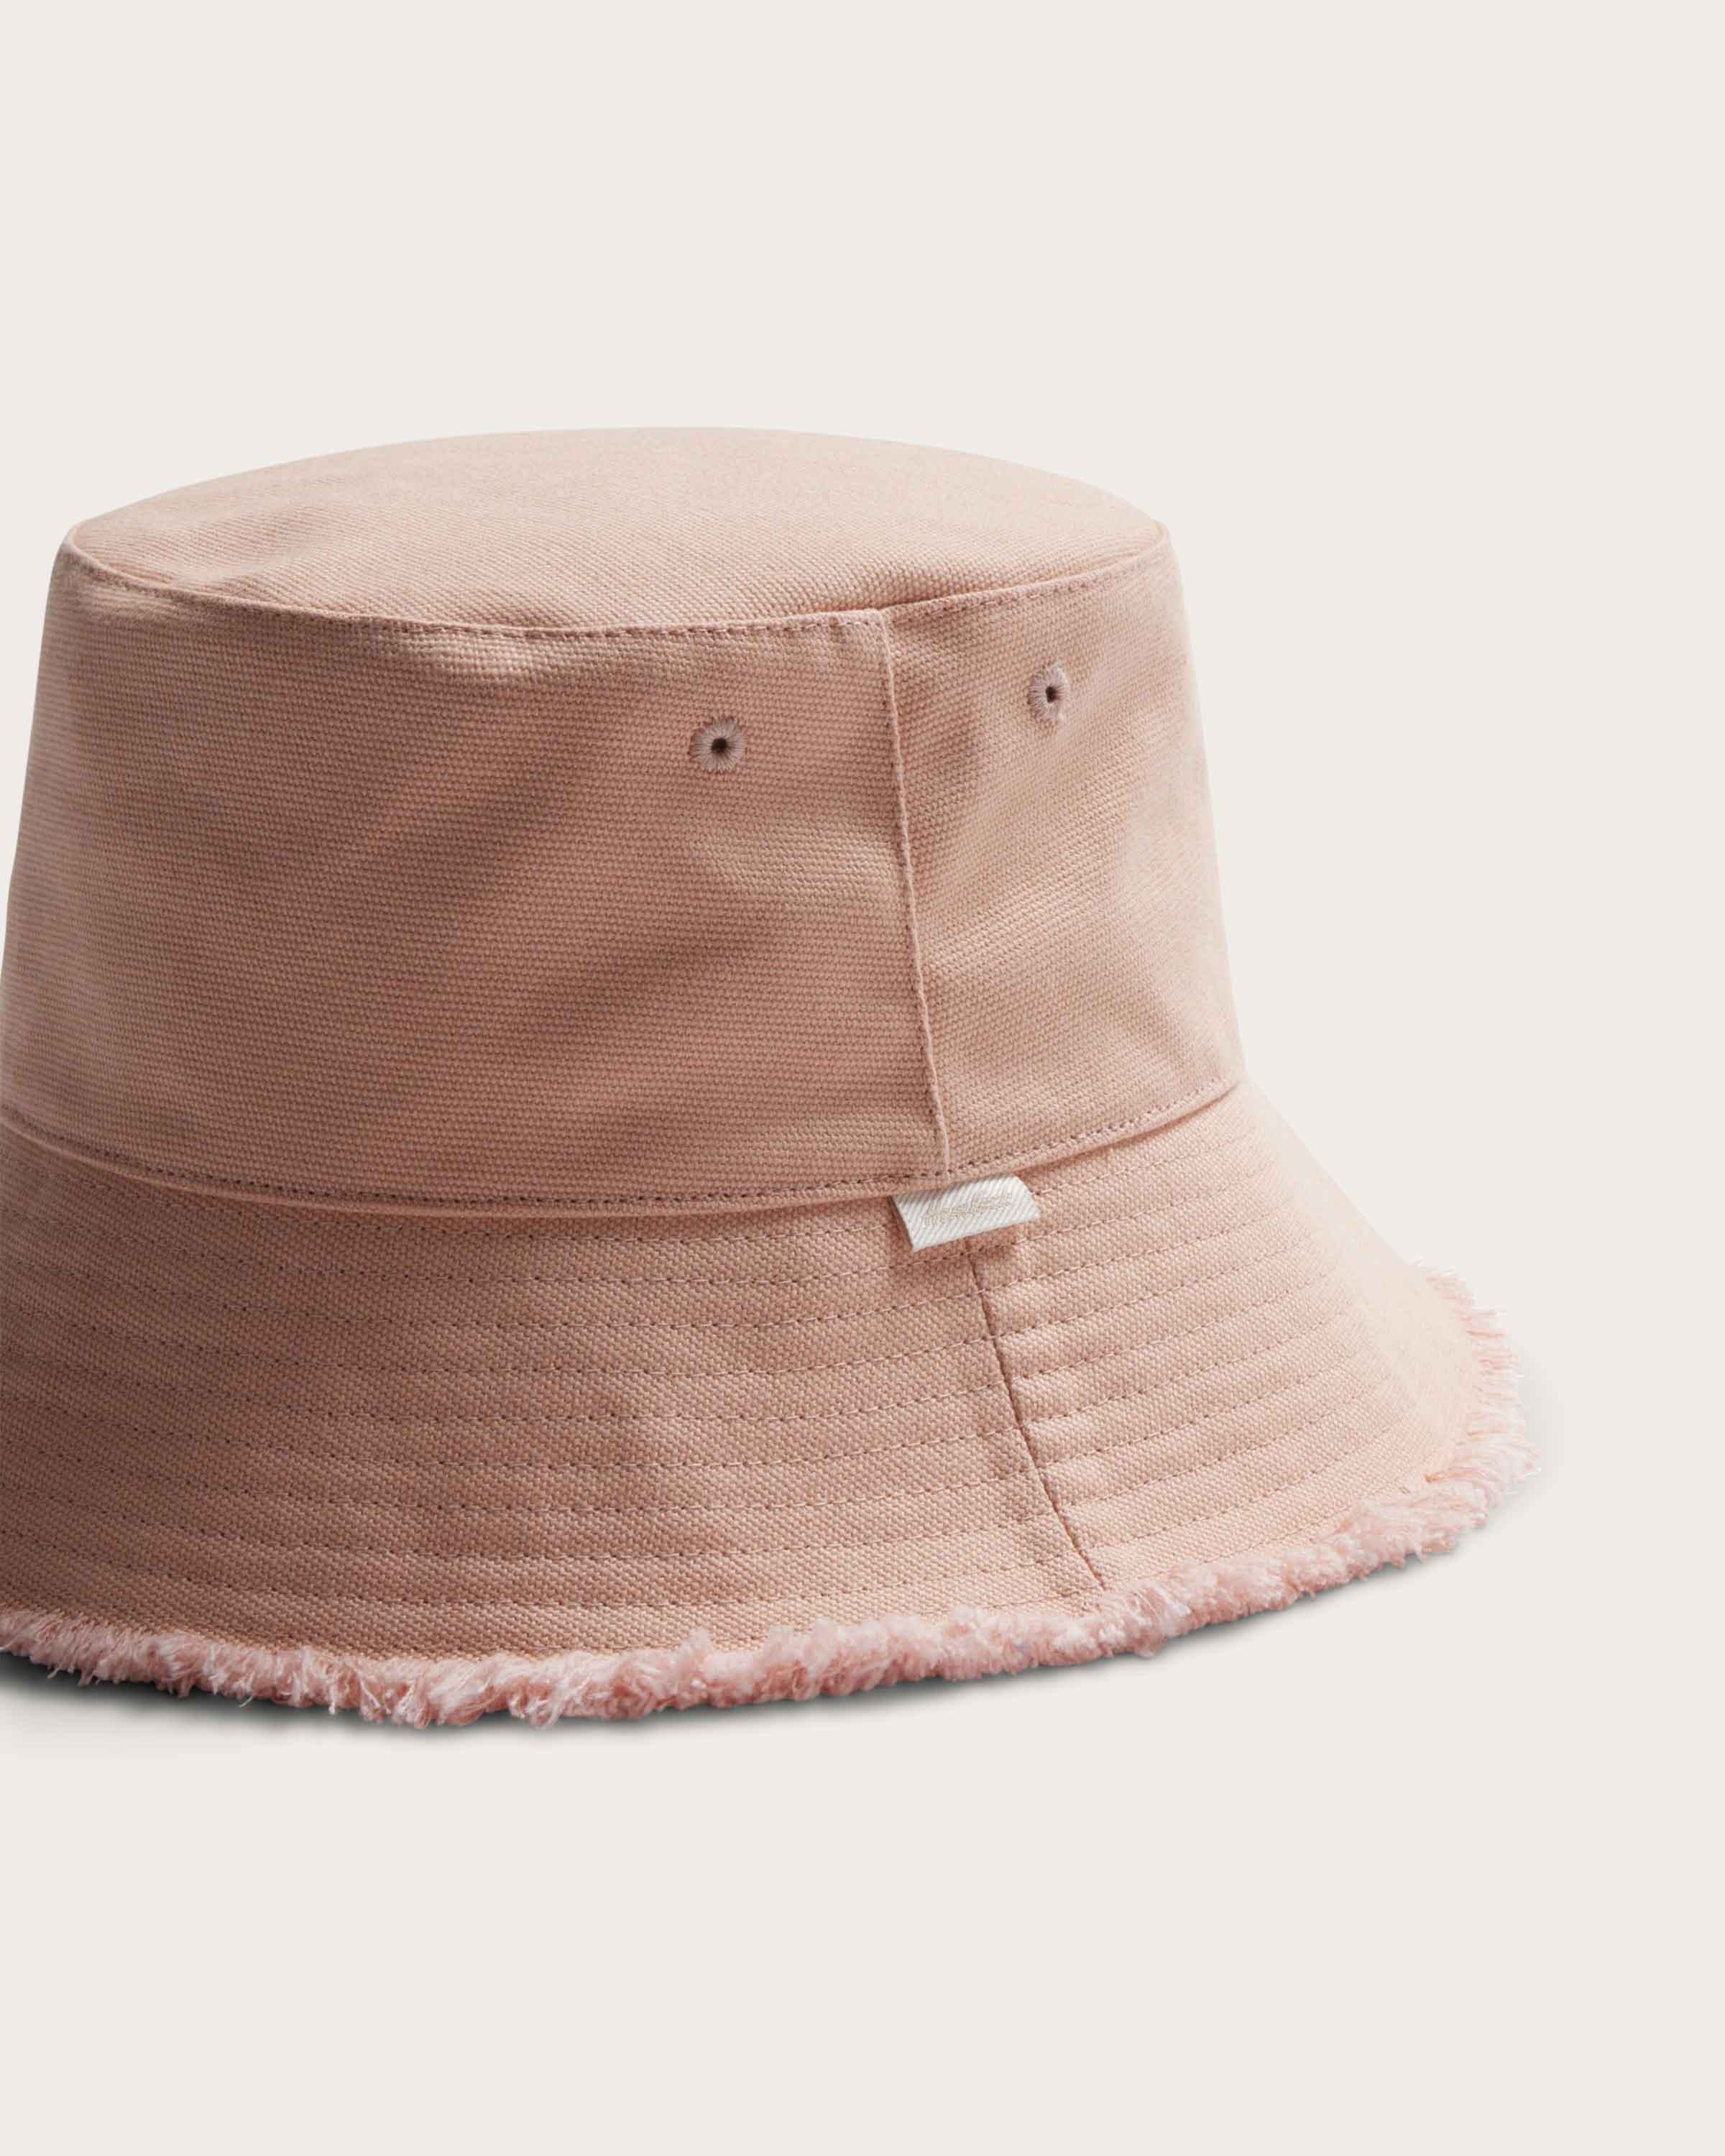 Coronado Bucket in Soft Pink - undefined - Hemlock Hat Co. Buckets